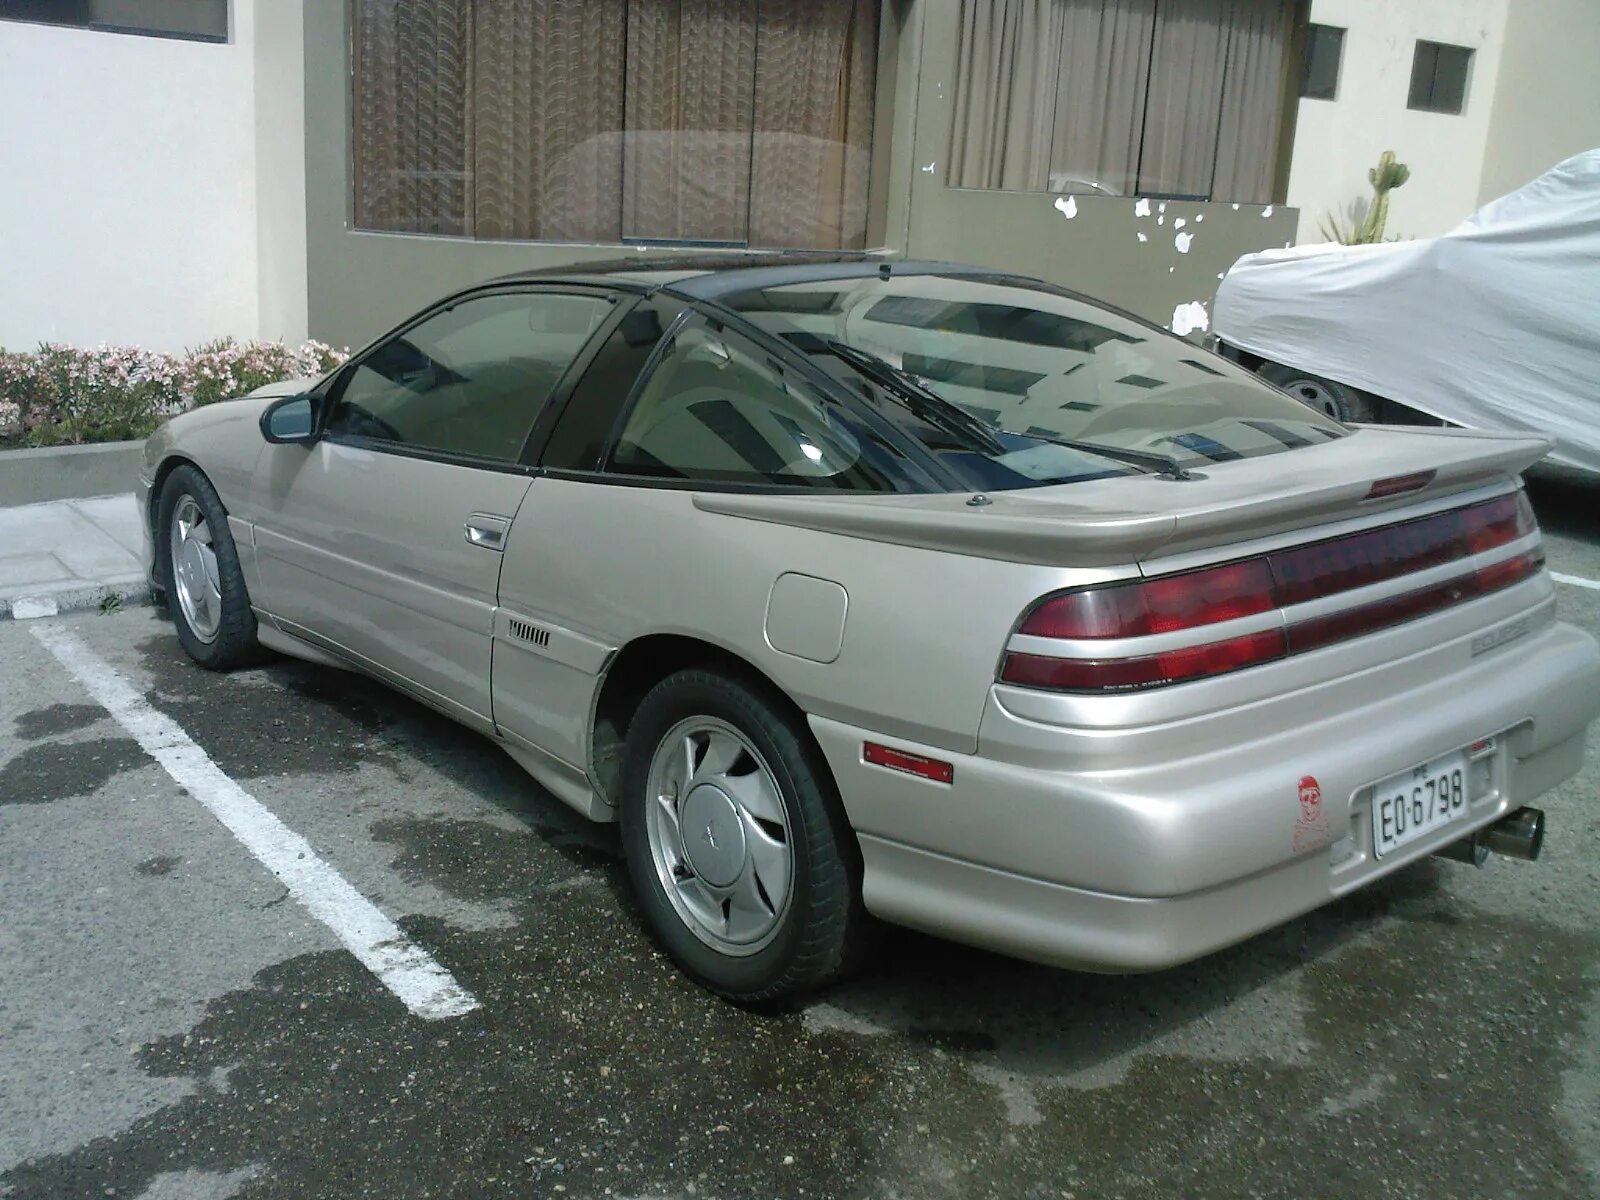 Митсубиси 1990. Митсубиси Eclipse 1990. Mitsubishi Eclipse GSX 1990. Mitsubishi Eclipse 90. Митсубиси Эклипс 1 1990.